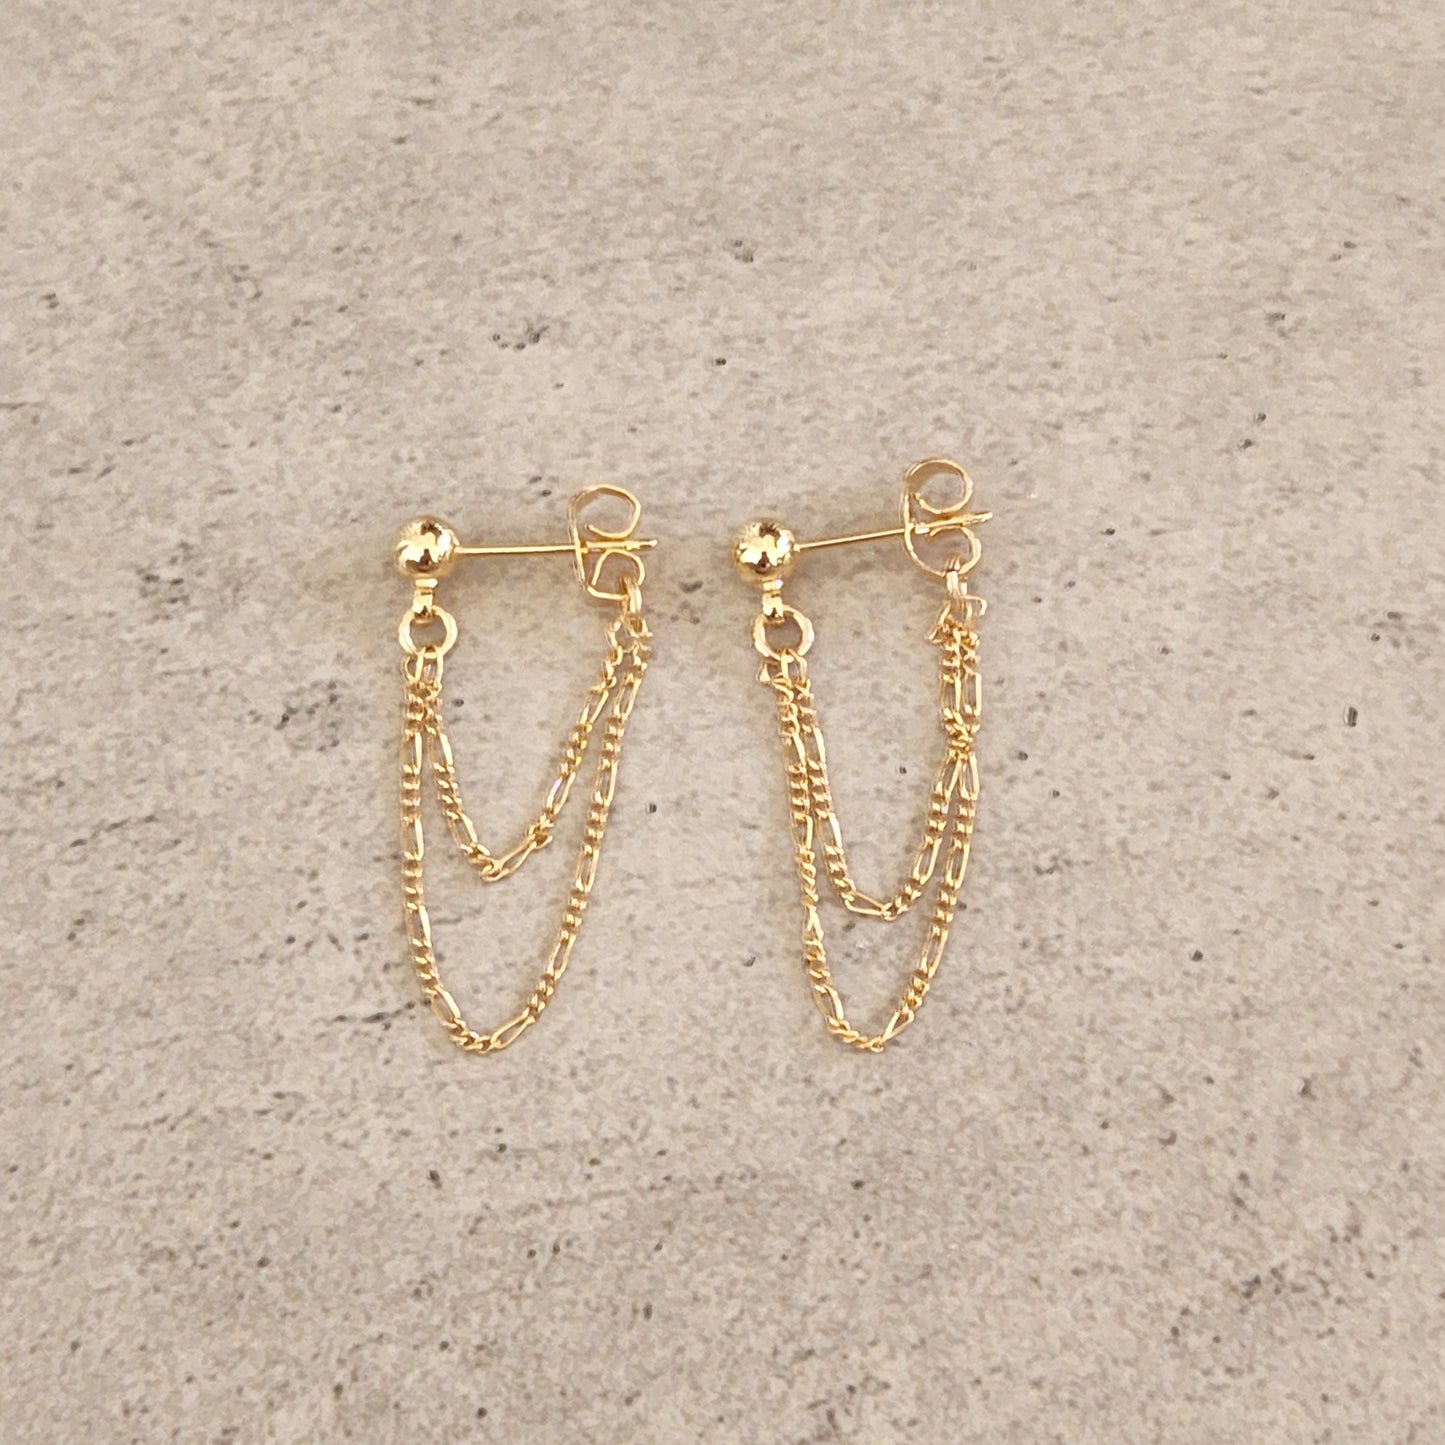 Minimalist Gold Chain Earrings